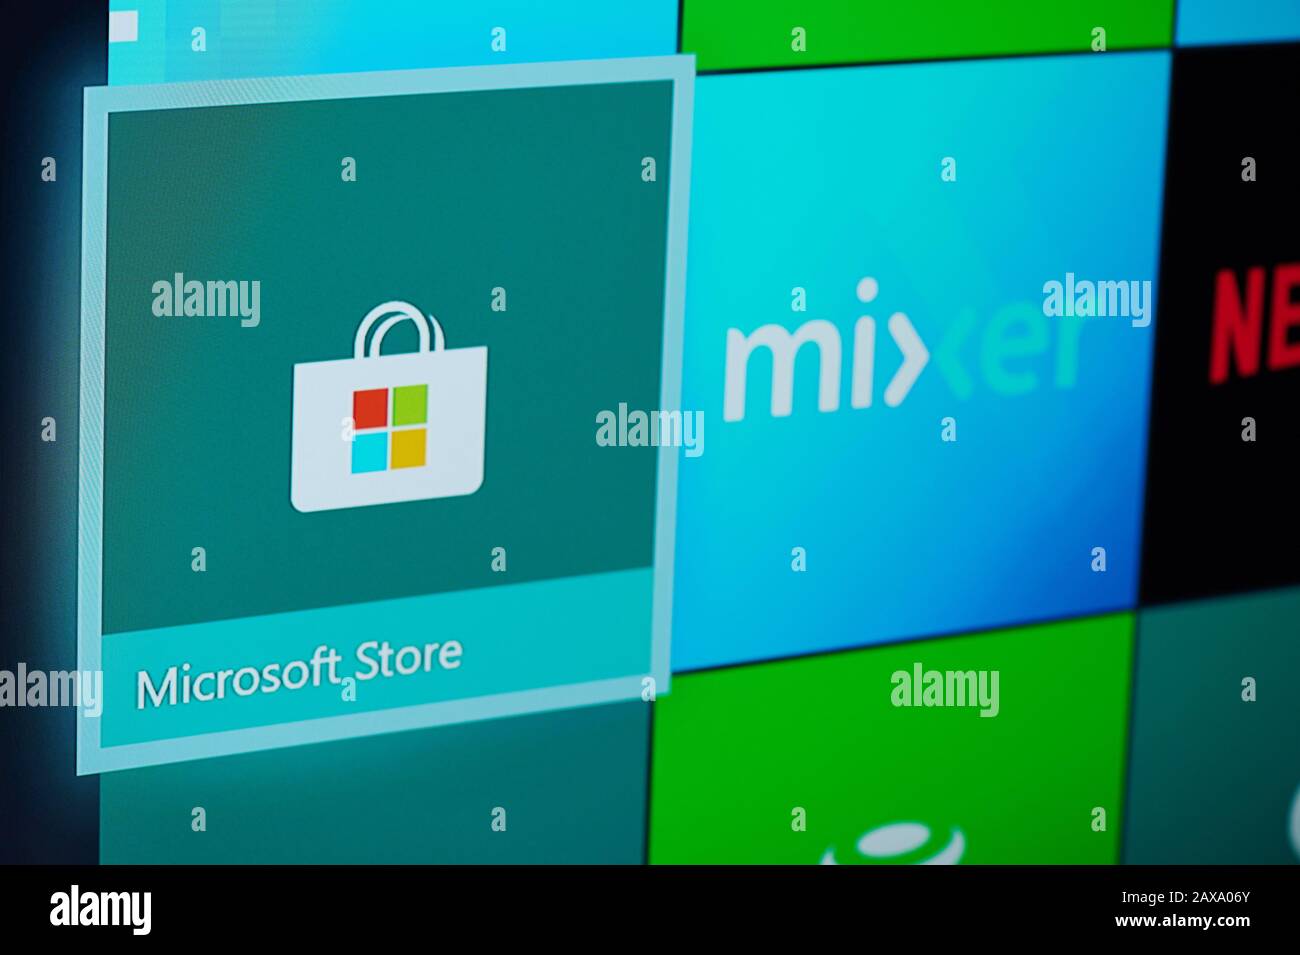 New-York , États-Unis - 11 février 2020: Microsoft Store app for xbox sur l'écran de télévision de près Banque D'Images